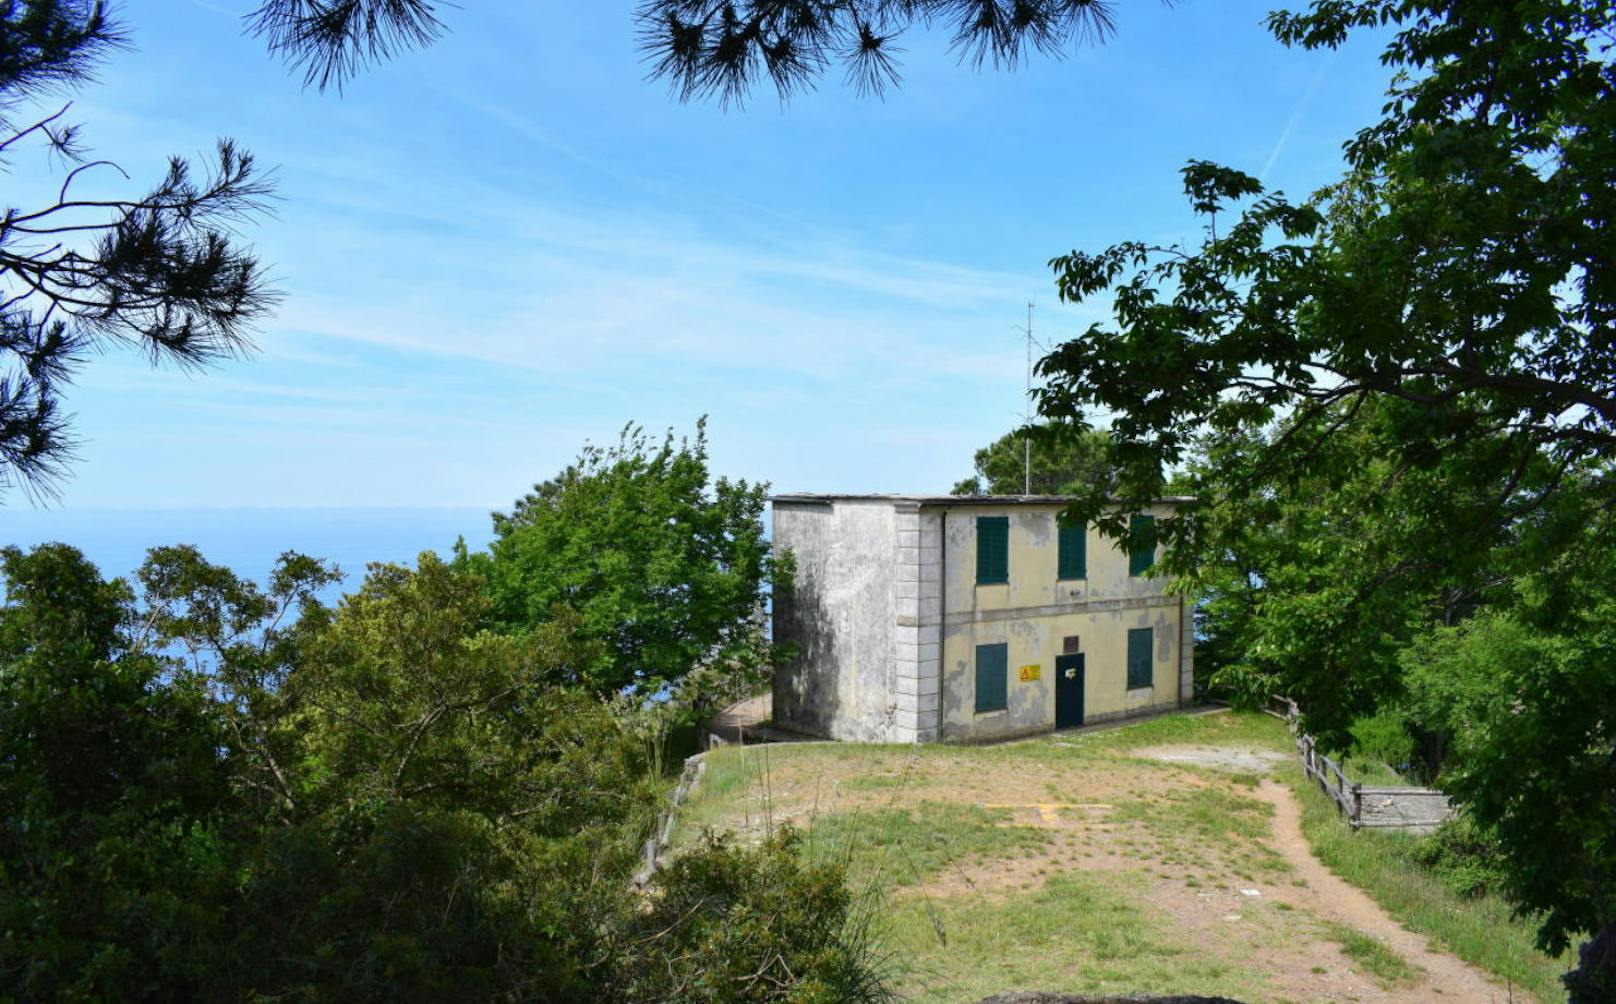 <b>Il Faro Semaforo Nuovo</b>
Im Portofino-Naturpark in Camogli, nahe Genua, steht dieses Haus mit Blick aufs Meer. Das Grundstück ist sehr gross: 6014 Quadratmeter. Auch dieses Haus darf für die Tourismusförderung genutzt werden ? für bis zu 50 Jahre.